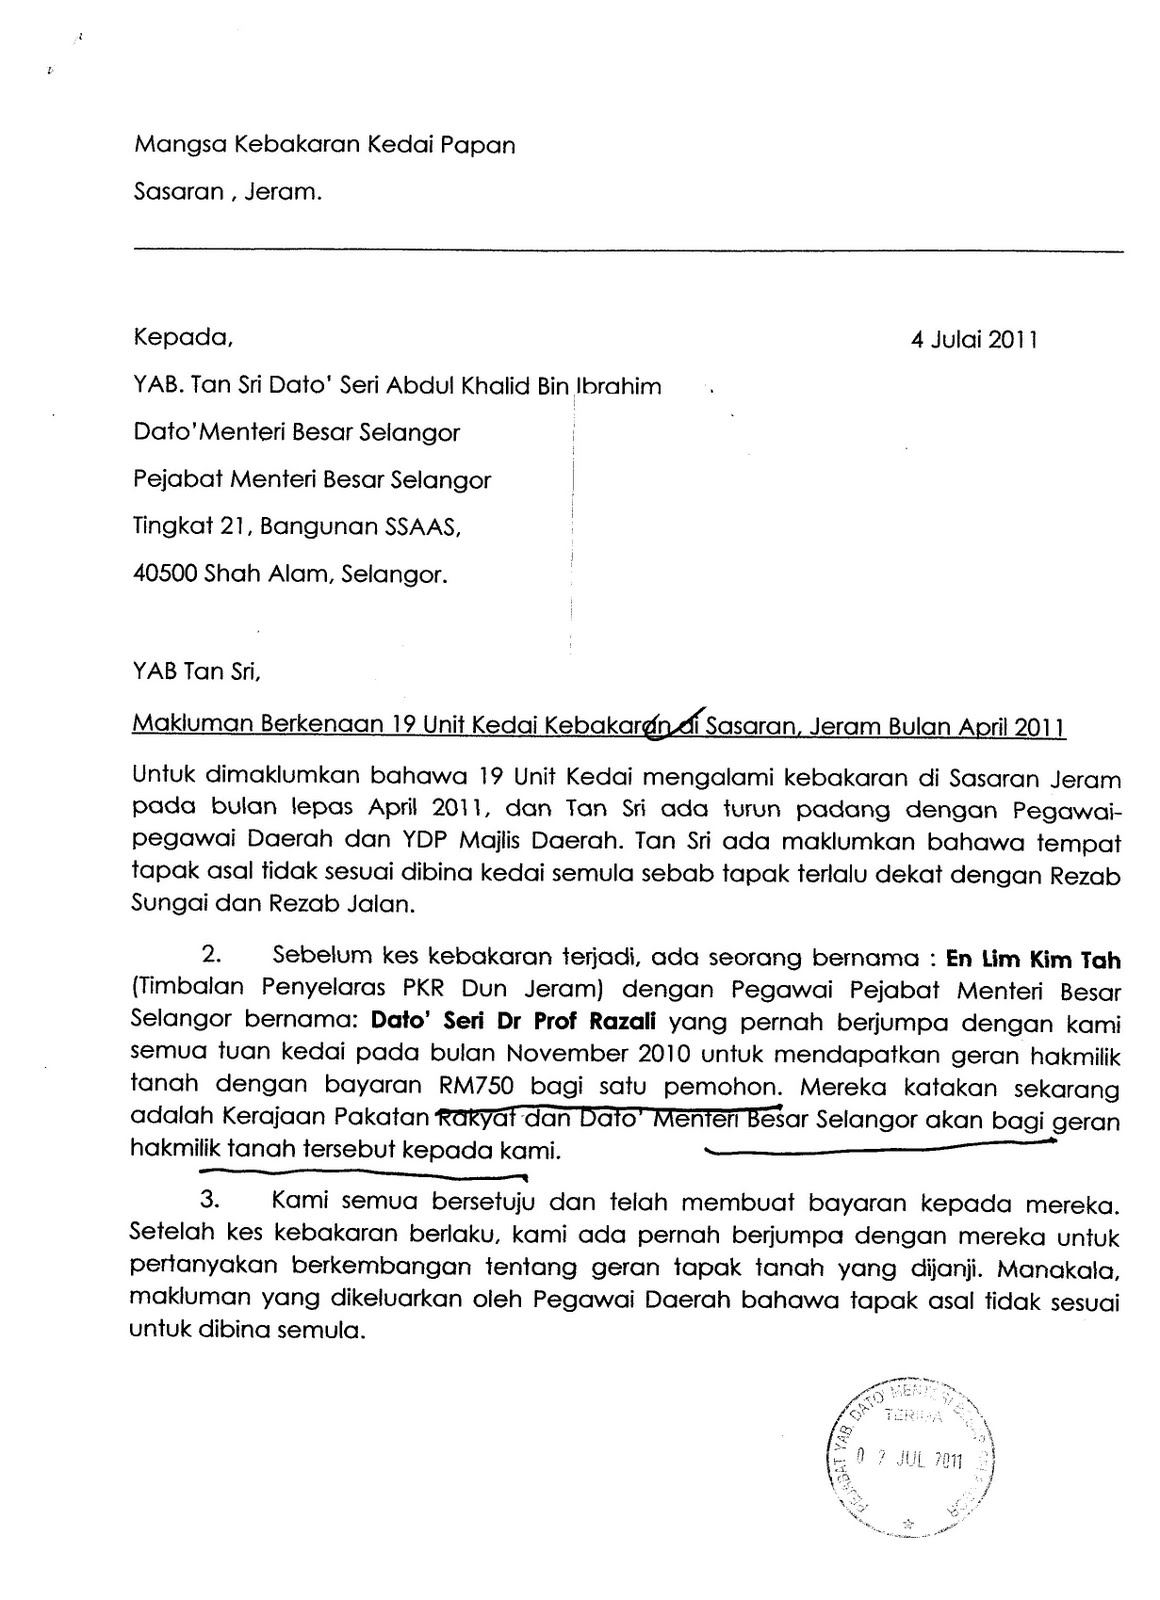 Malaysia-Waves: Bekas Pegawai MB Selangor Bakal Masuk UMNO?